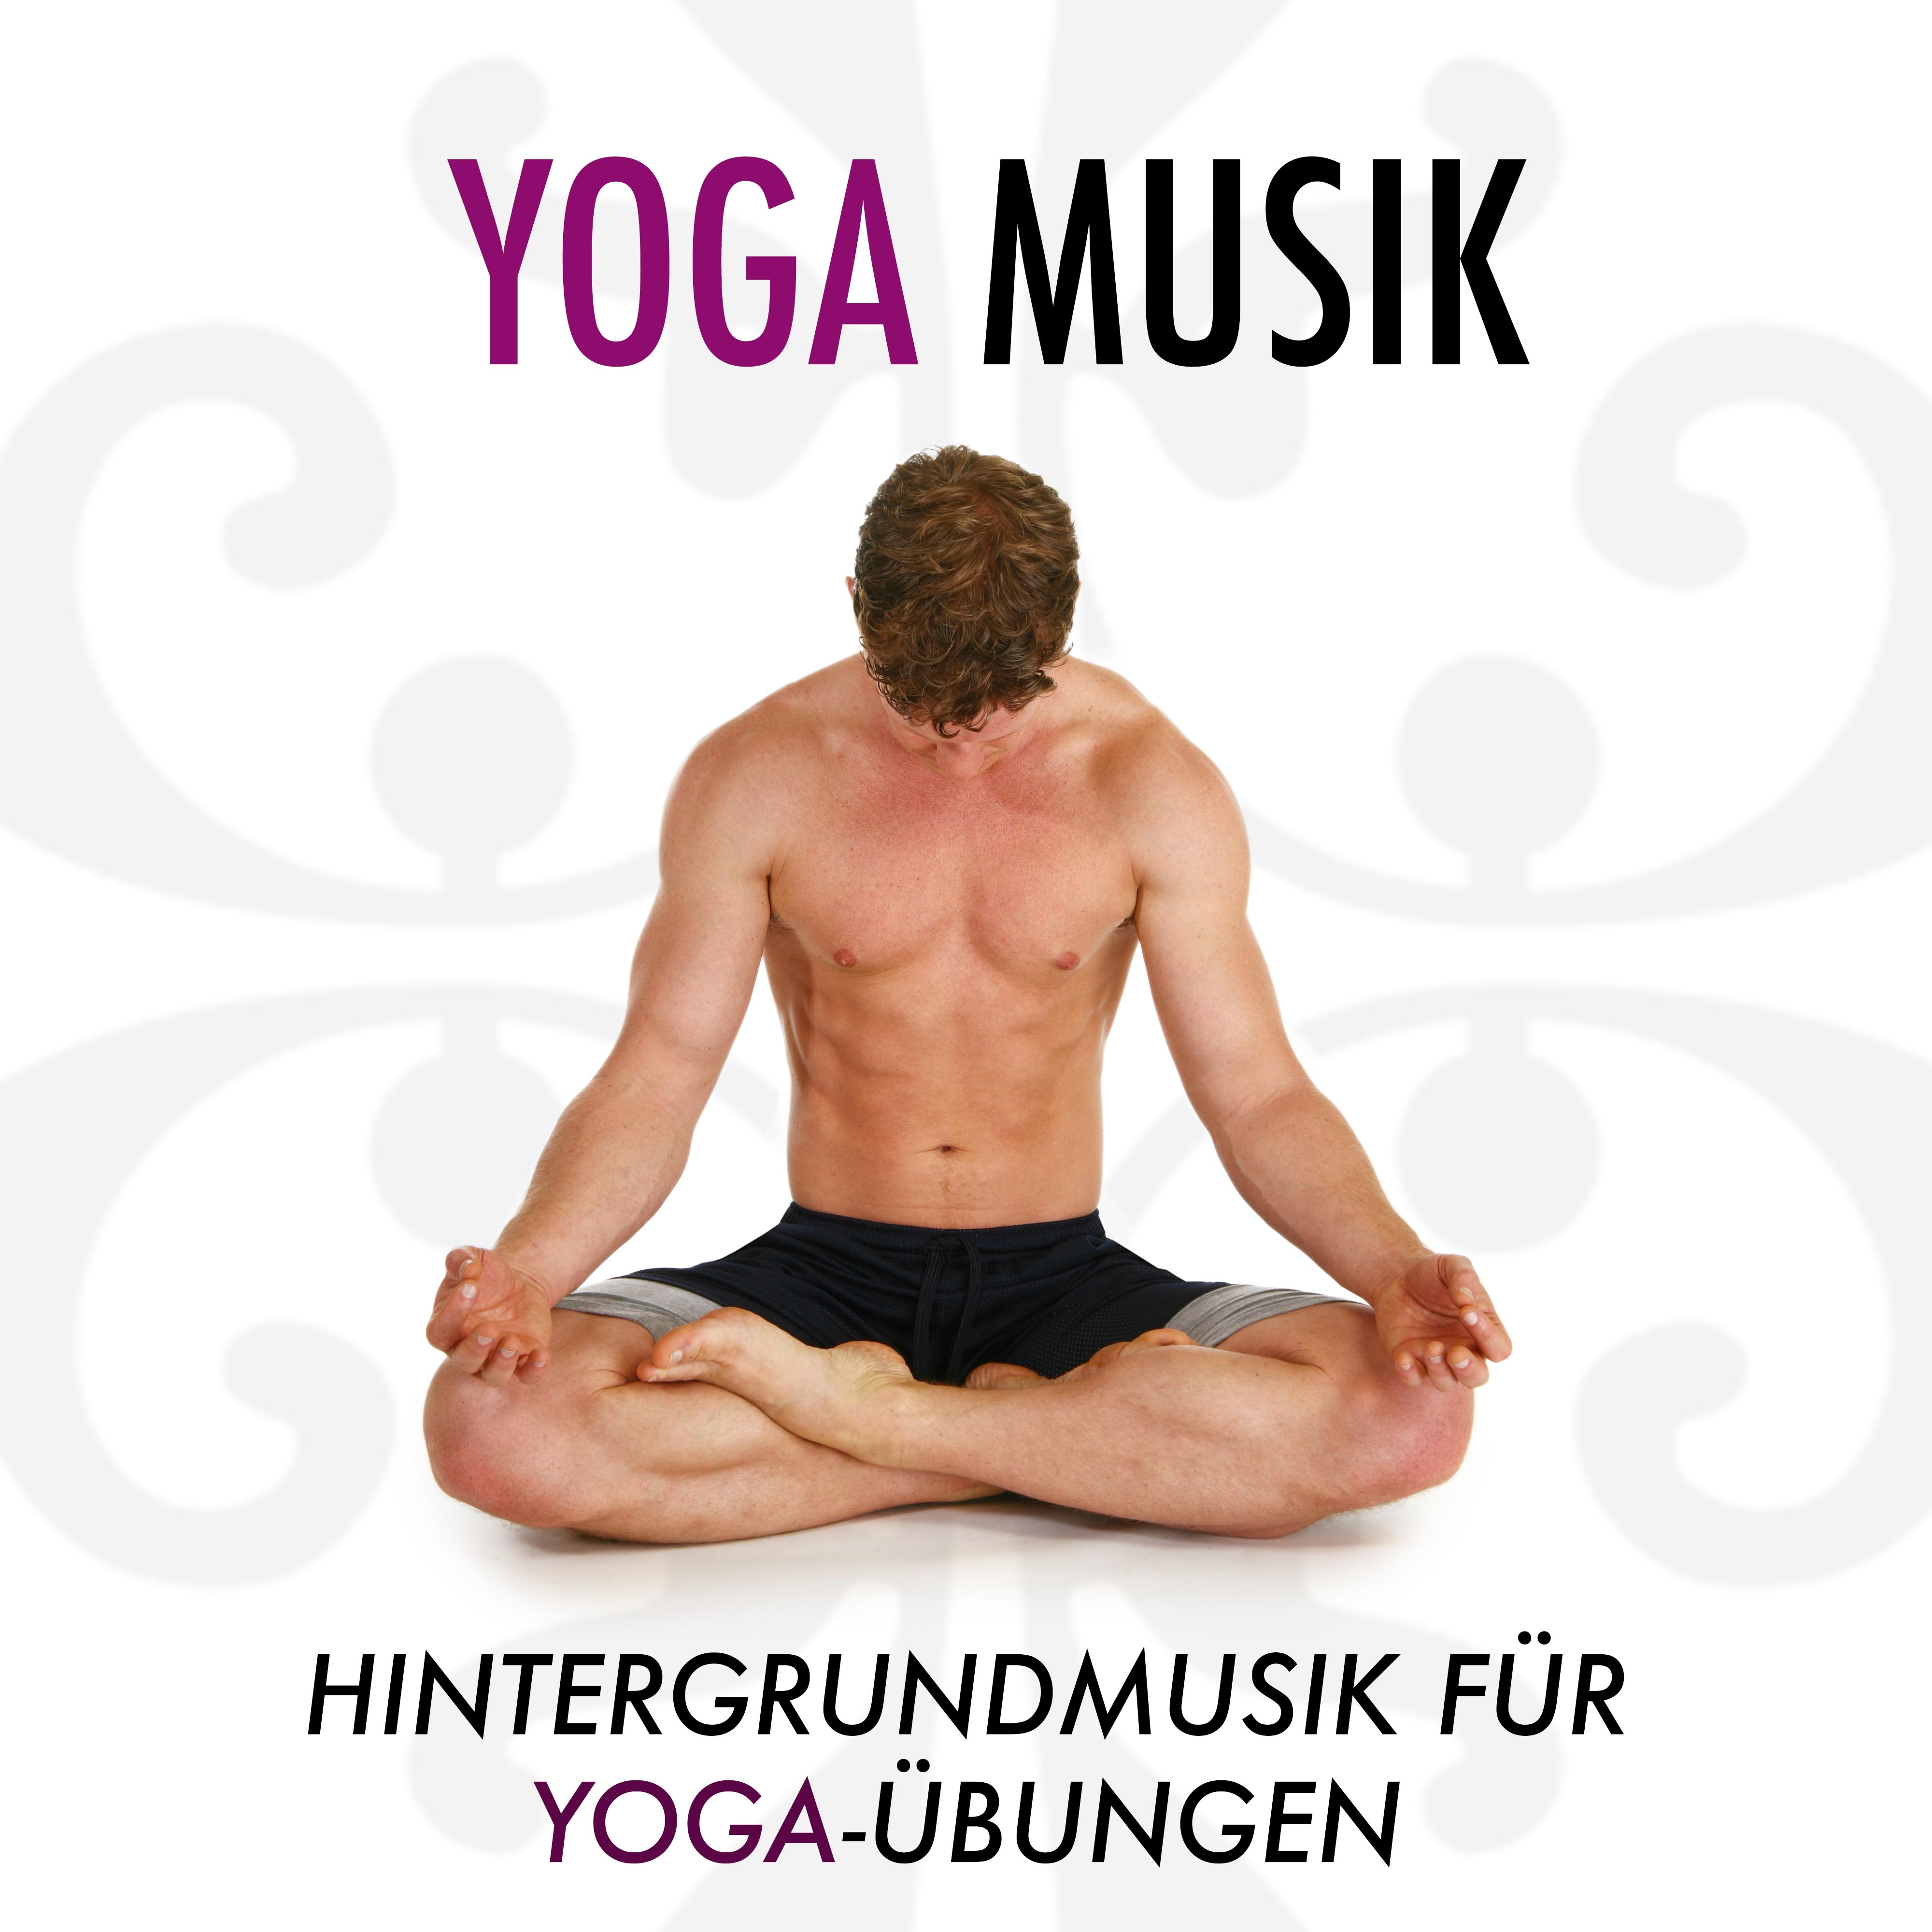 Yoga Musik: Hintergrundmusik für Yoga-Übungen, Yoga-Kurse, Hatha-Yoga, Pranayama, Asanas und Iyengar